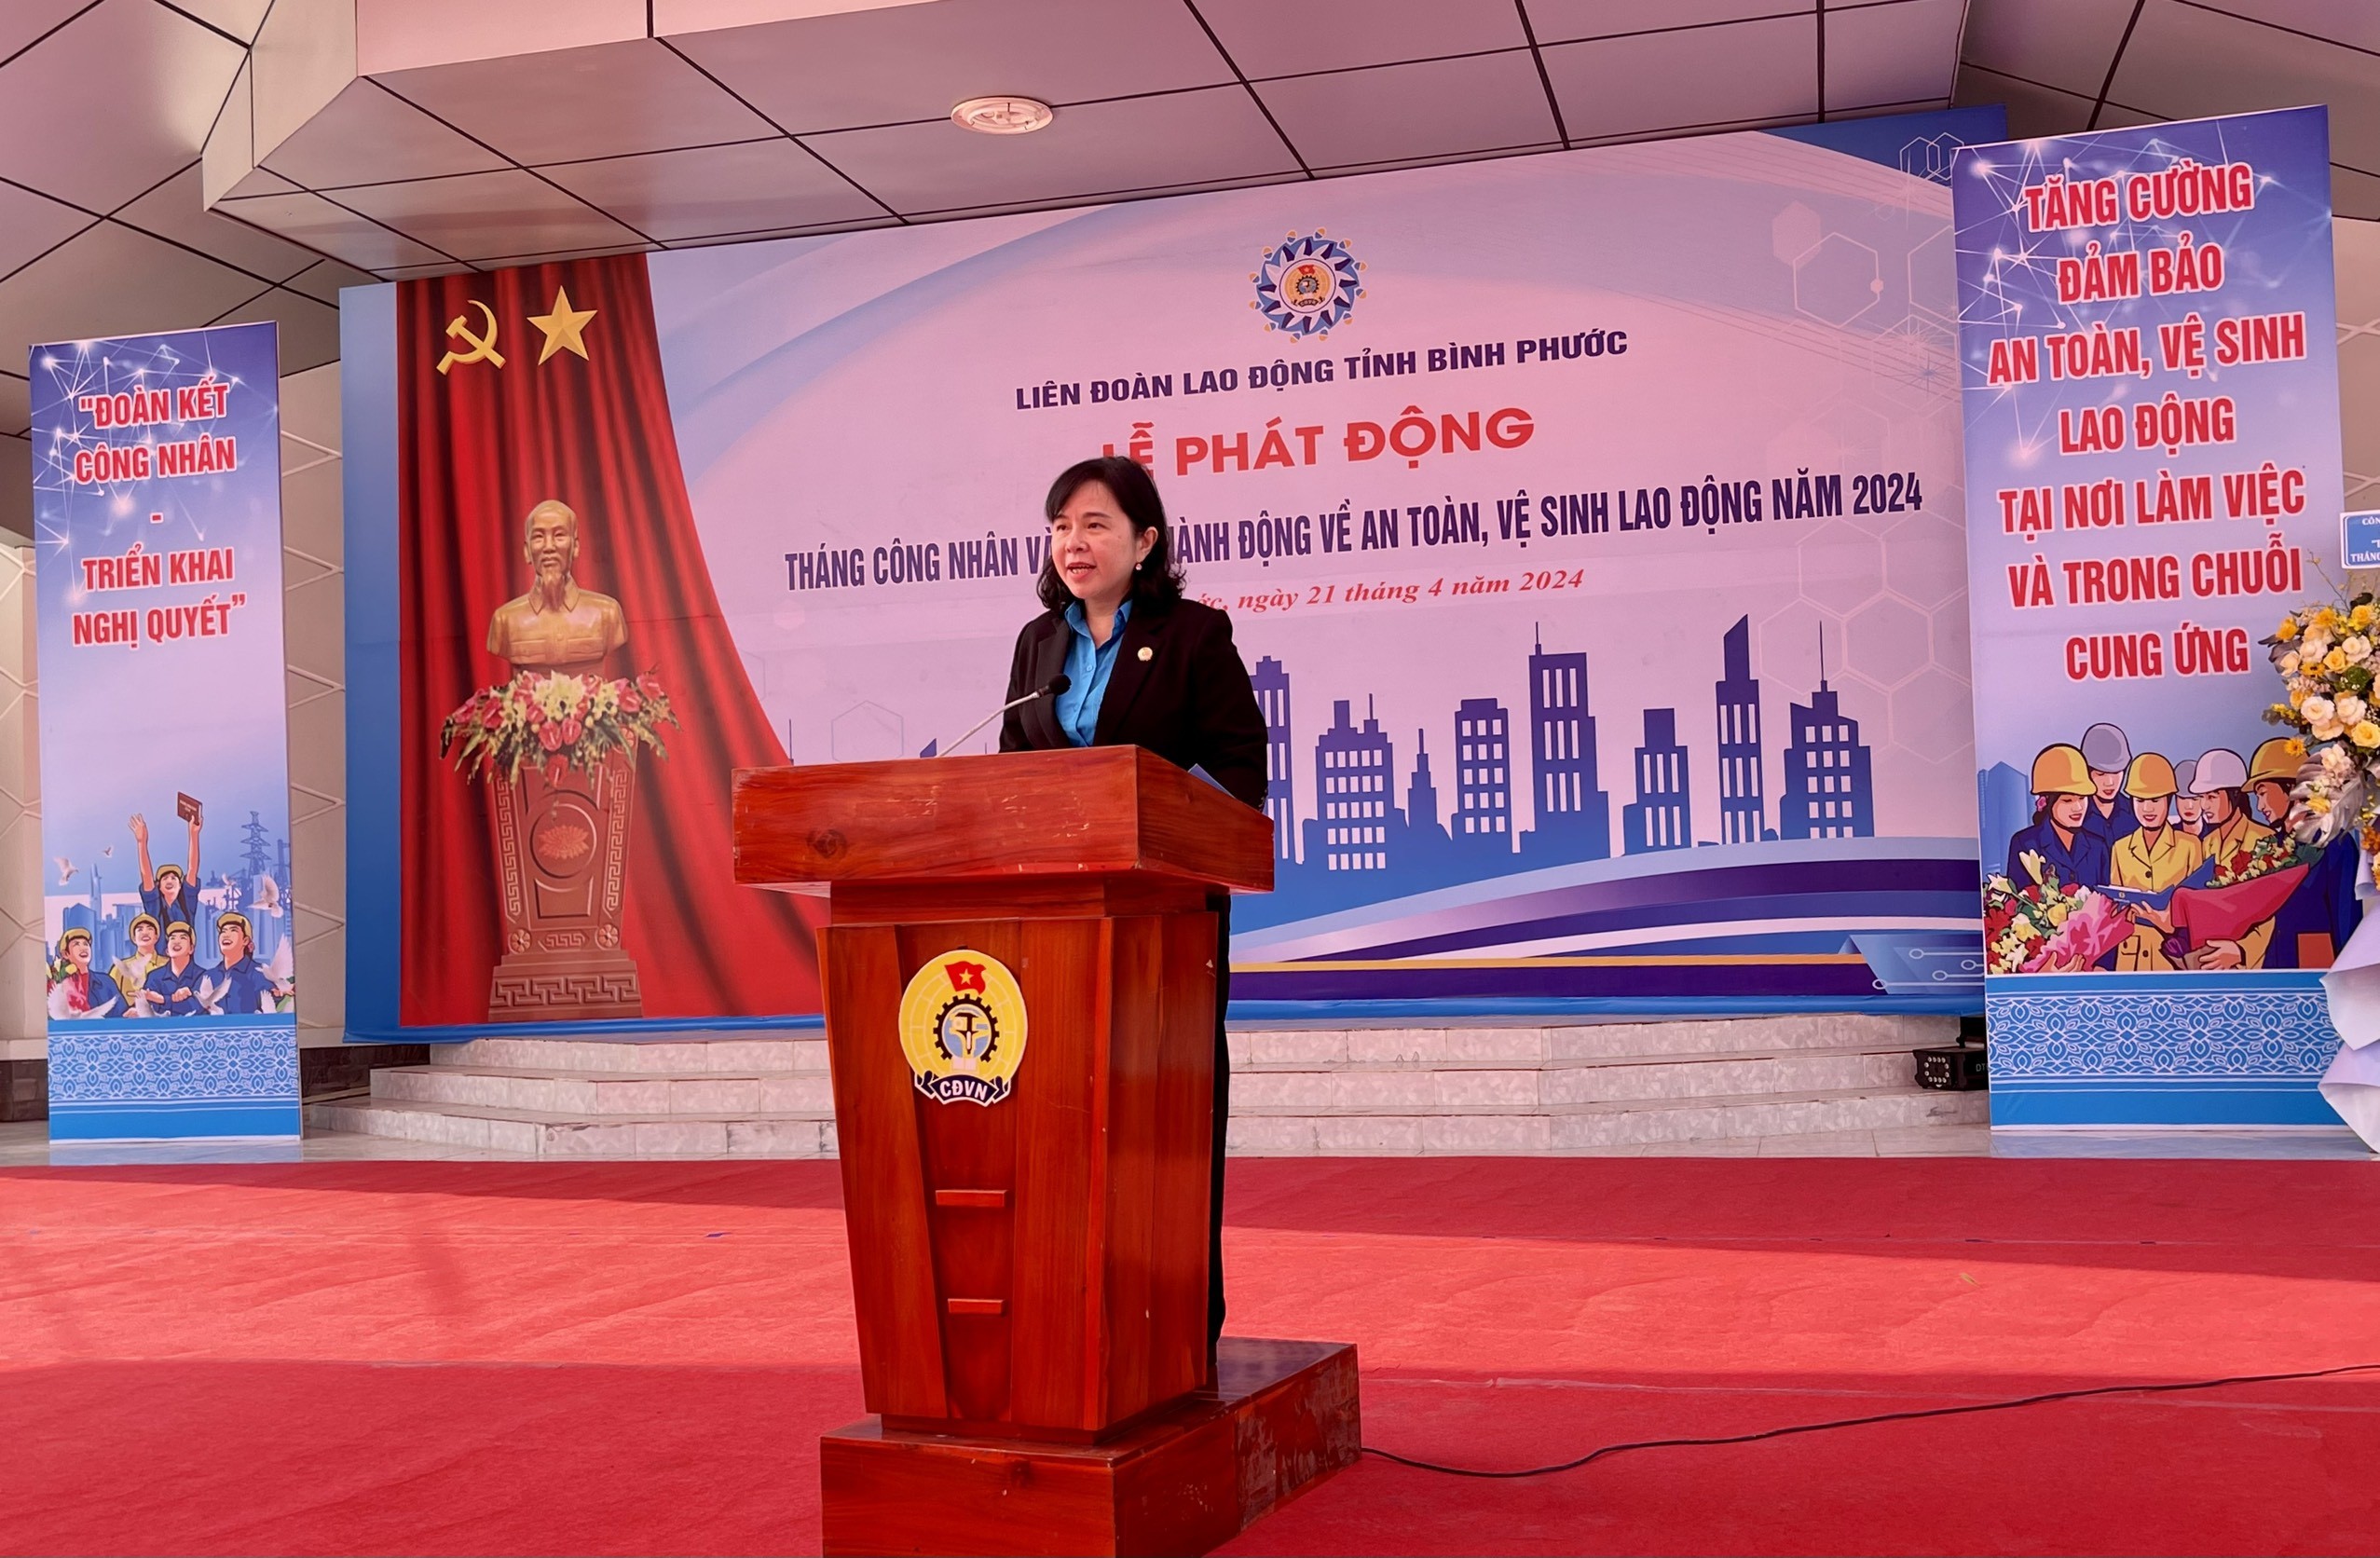 Dân sinh - Bình Phước: Phát động Tháng công nhân, vệ sinh lao động năm 2024